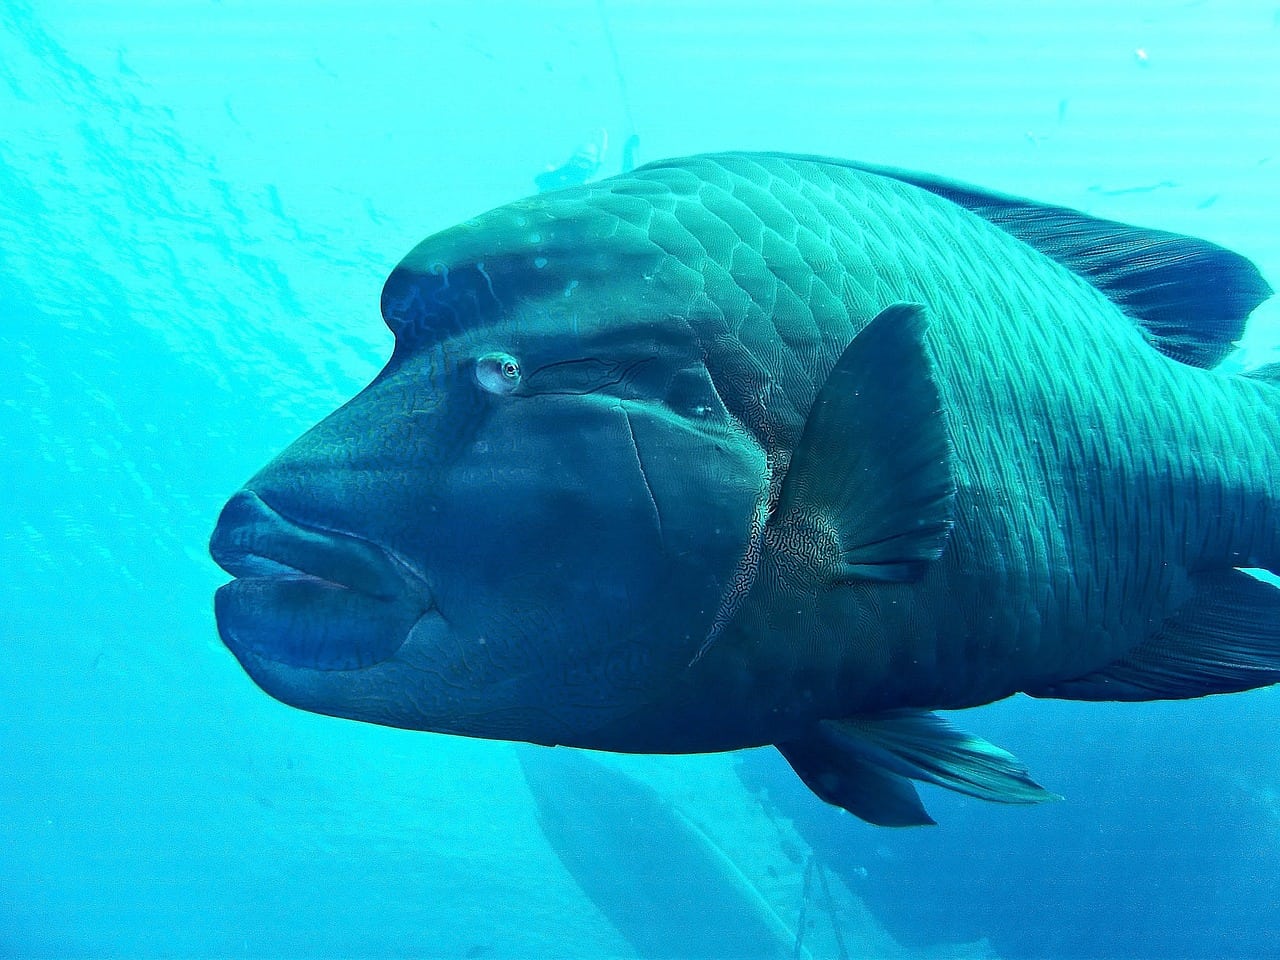 El pez napoleón puede superar los doscientos kilos de peso, y su pesca masiva para abastecer restaurantes lo ha llevado al borde de la desaparición.